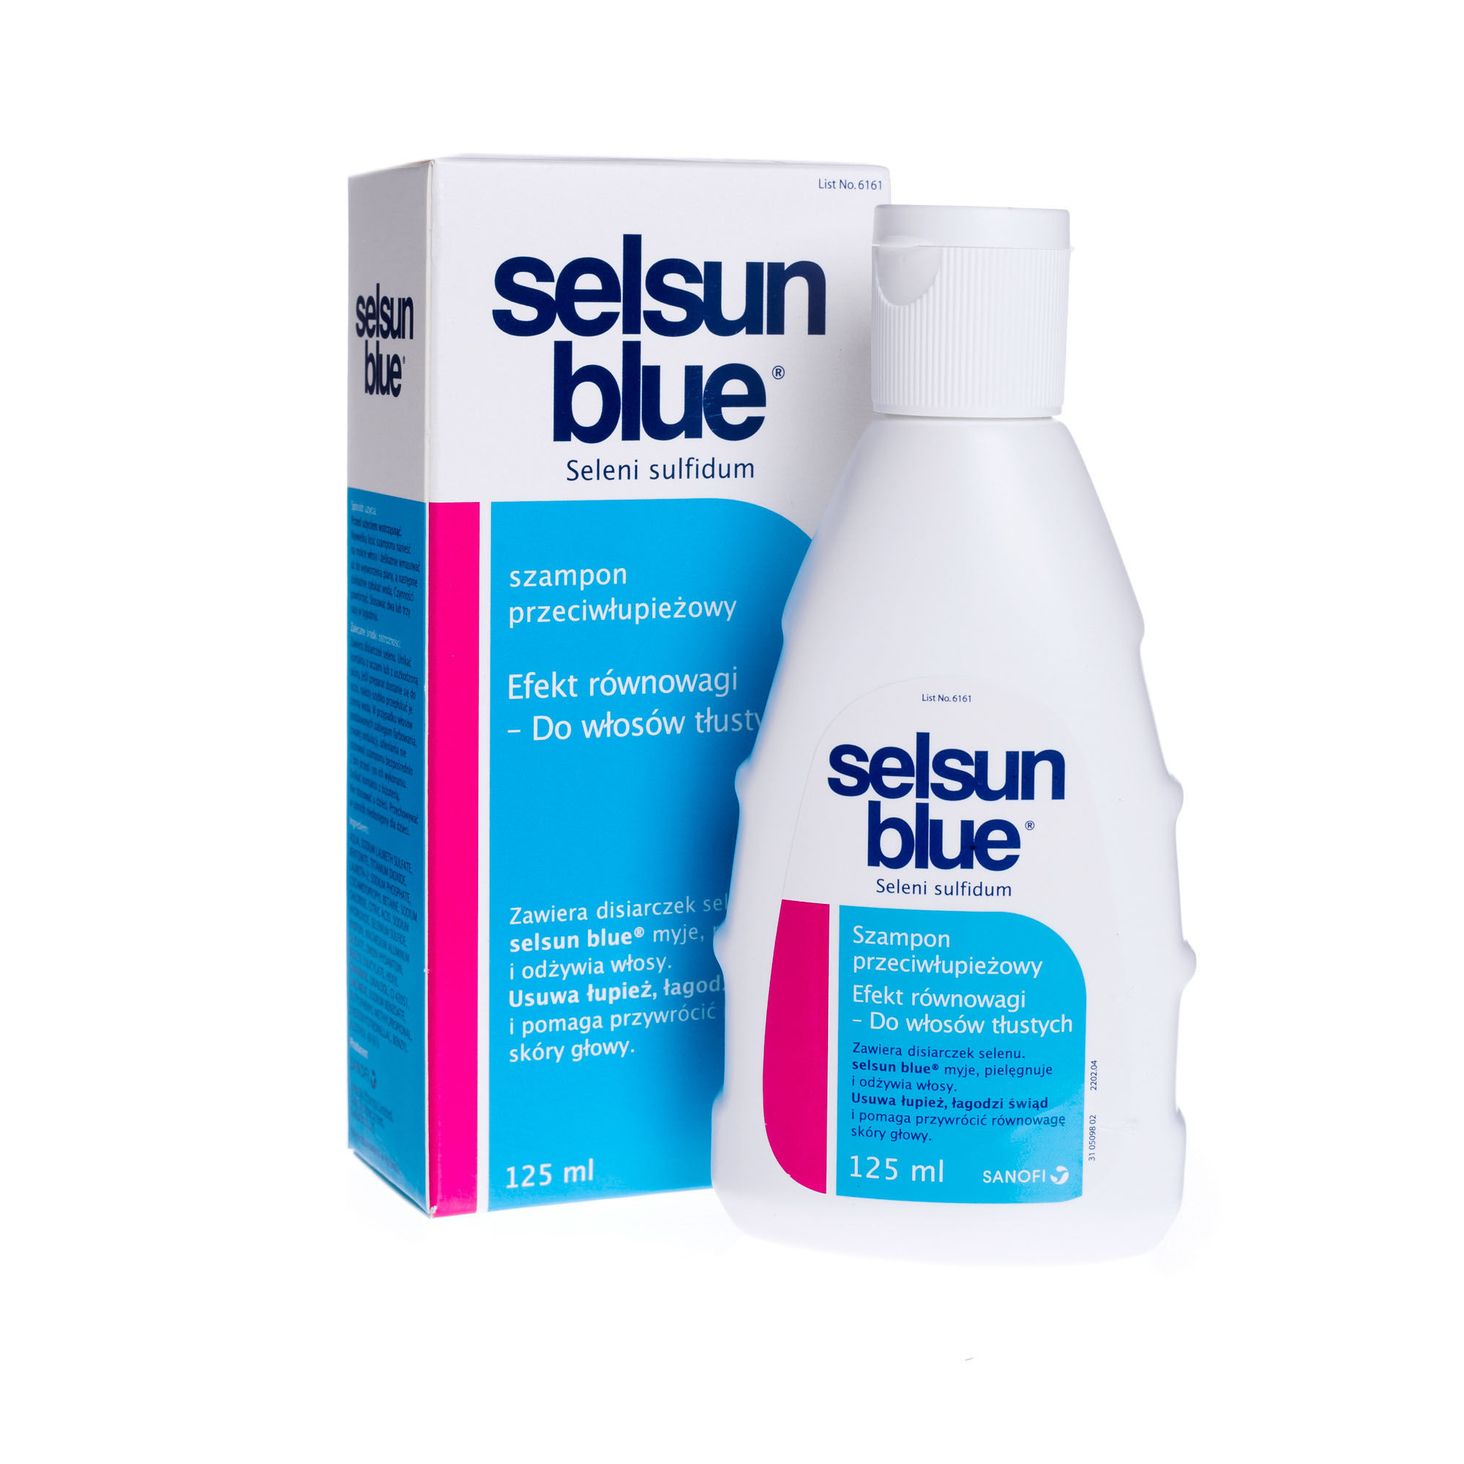 selsun blue szampon leczniczy przeciwłupieżowy opinie